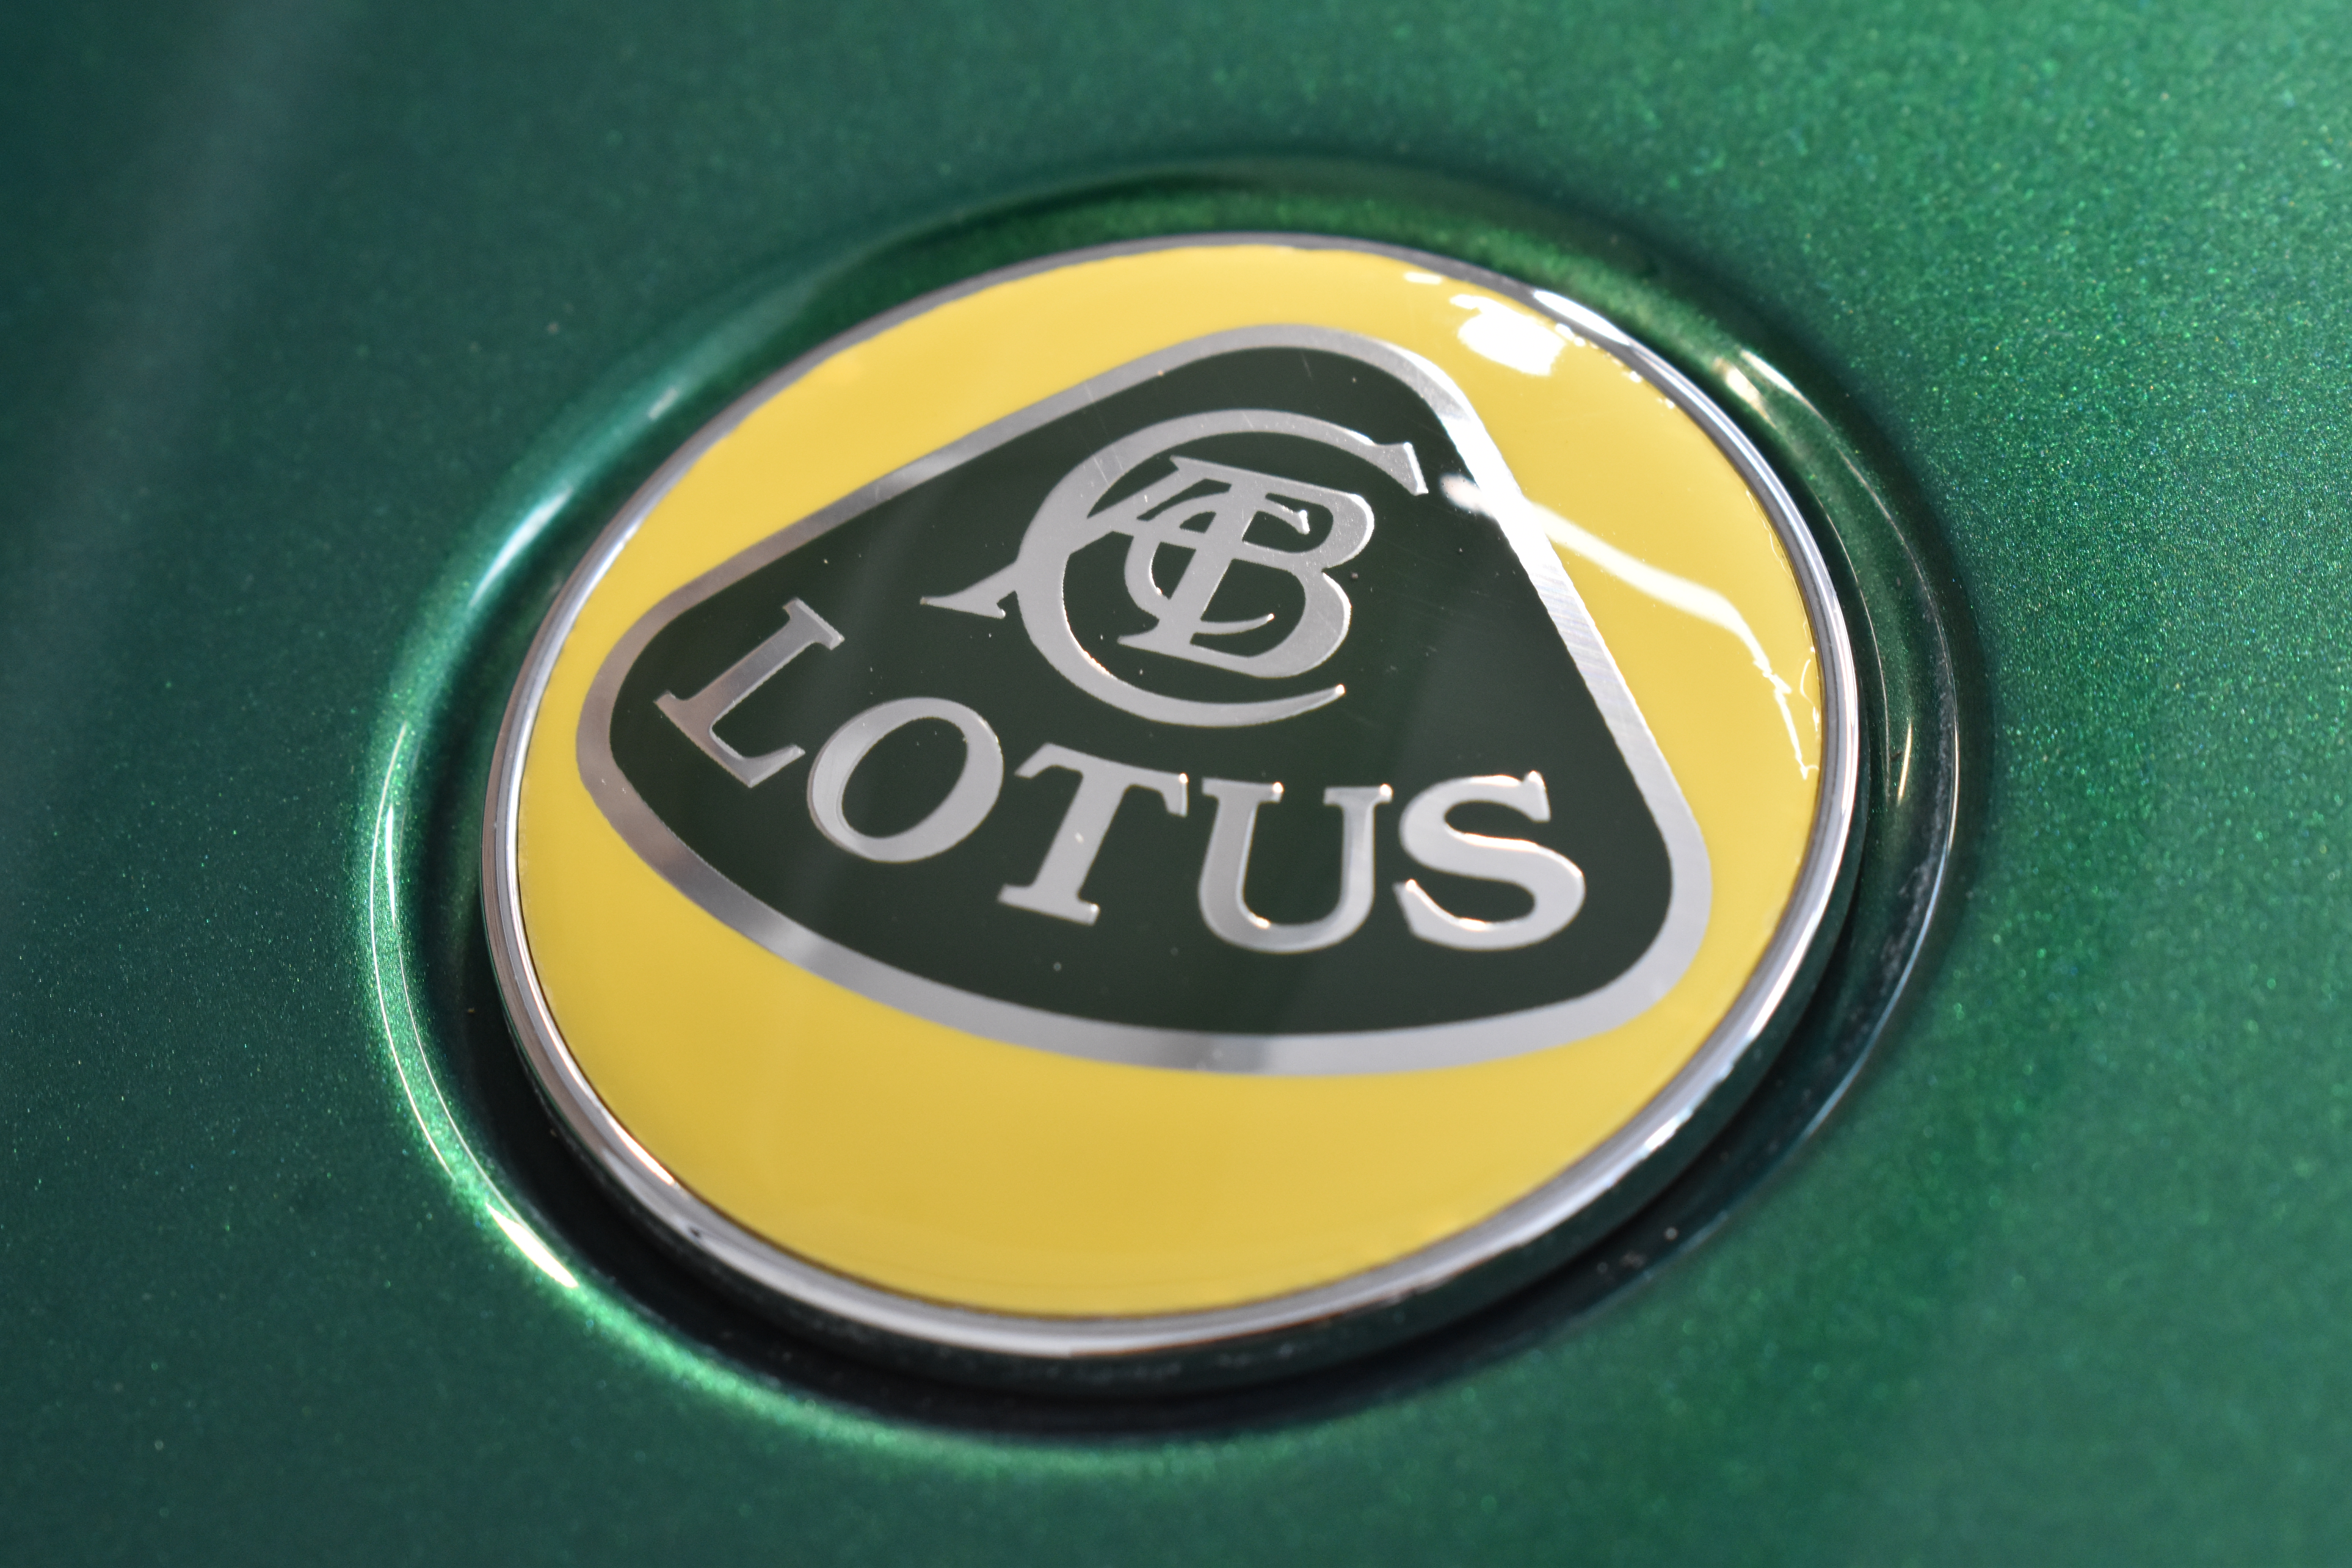 Teaser Video Points To Lotus Emira Track Car Debuting May 5